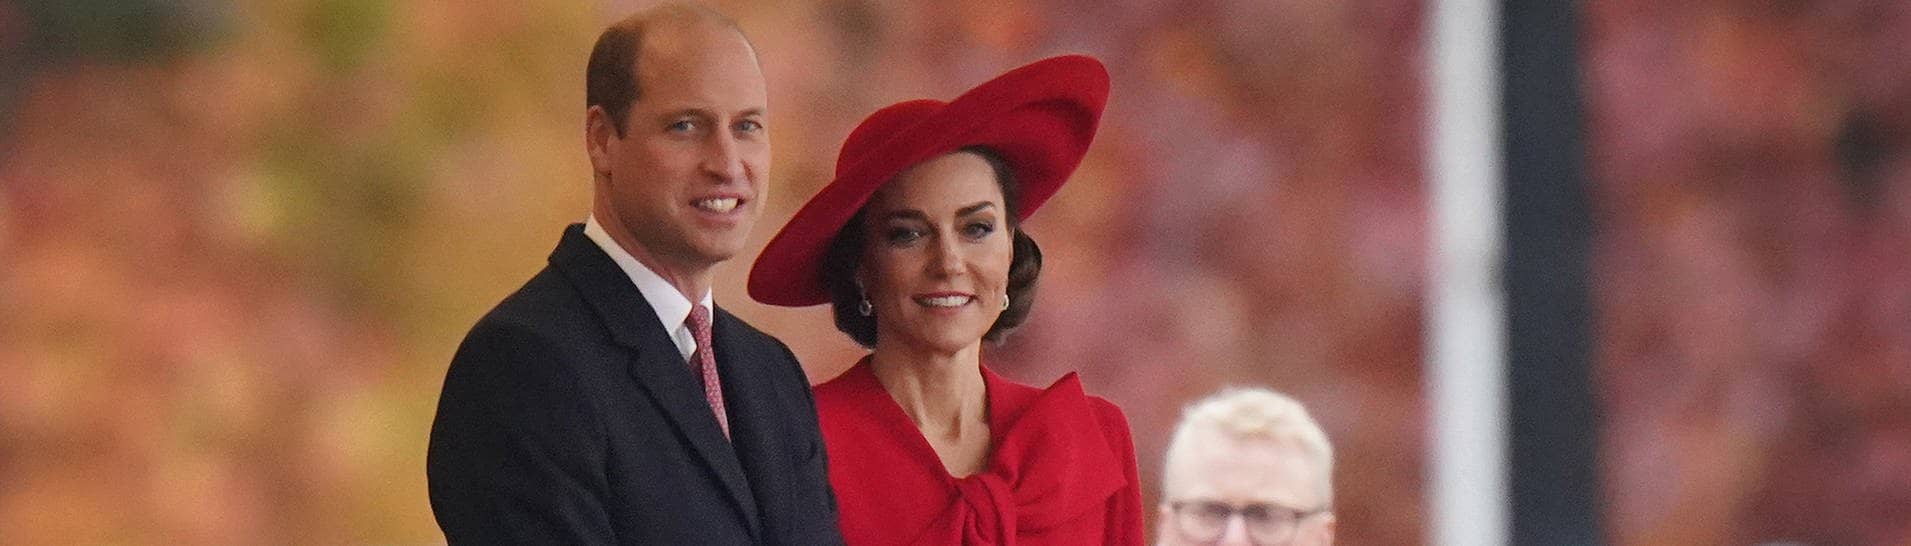 Kate und William bei einem offiziellen Empfang: Jetzt gibt es Vorwürfe, dass der Kensington-Palast ein Foto von Kate manupuliert hat